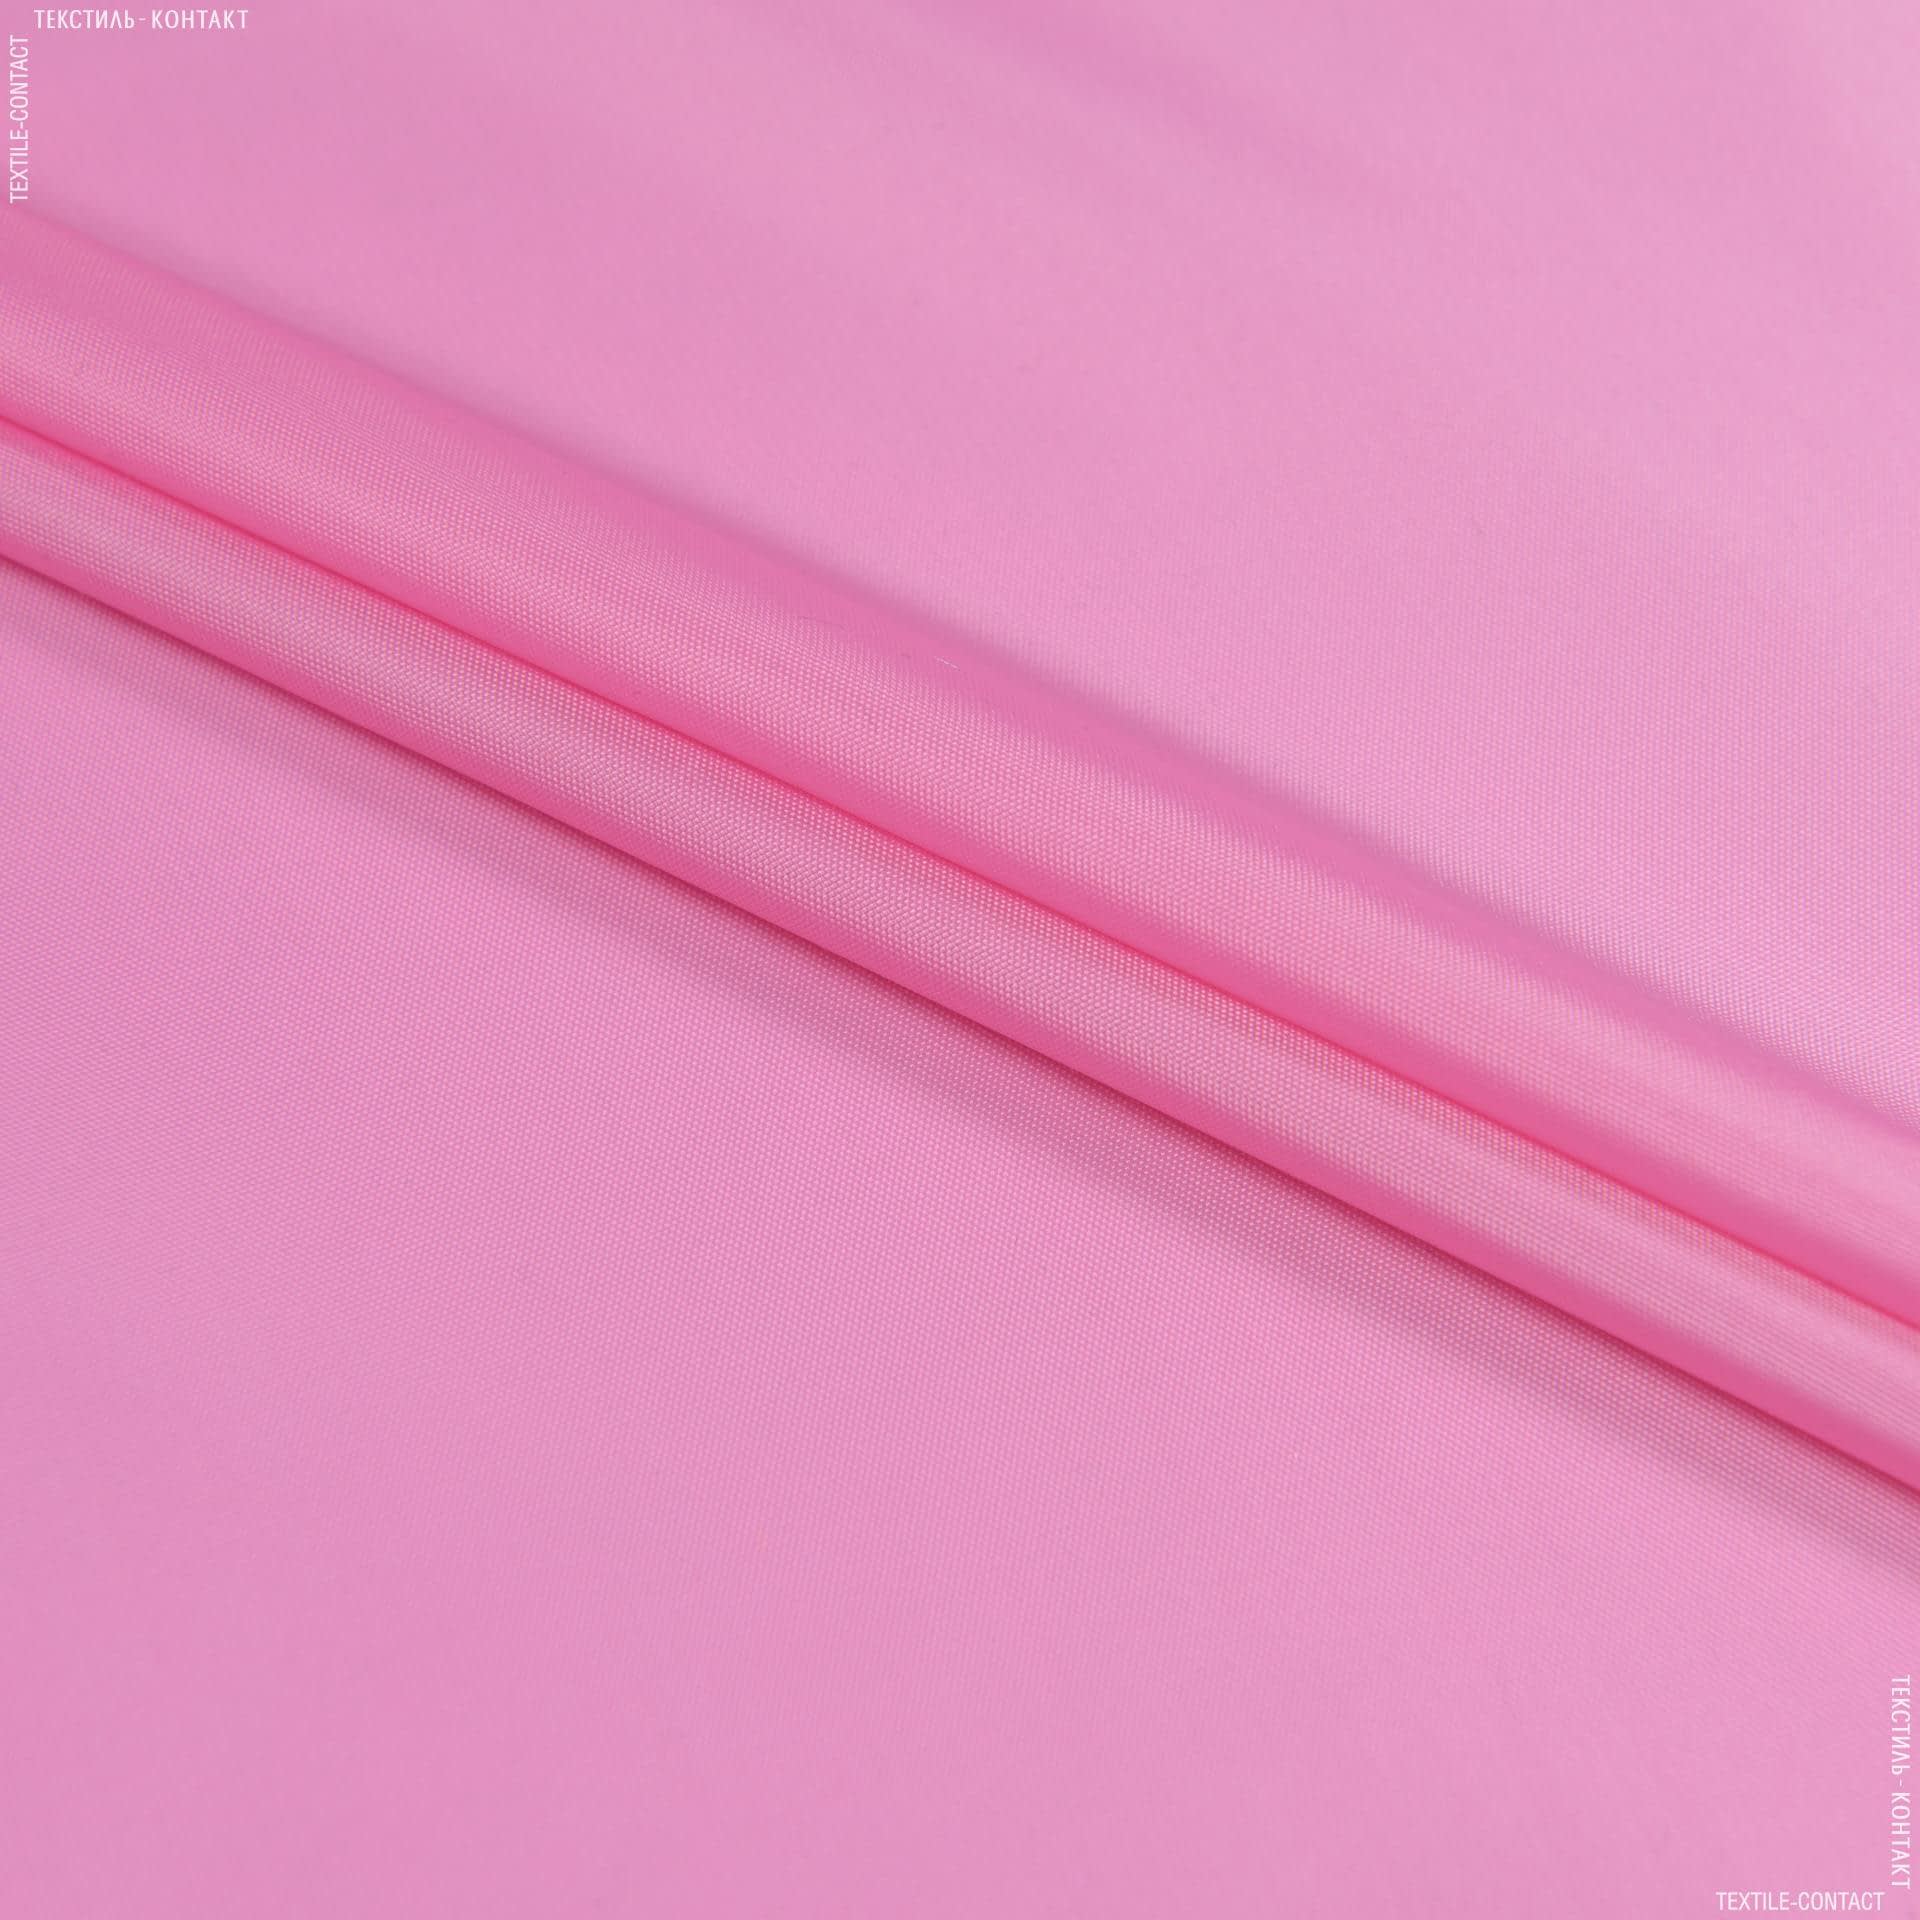 Ткани для палаток - Болония розовый